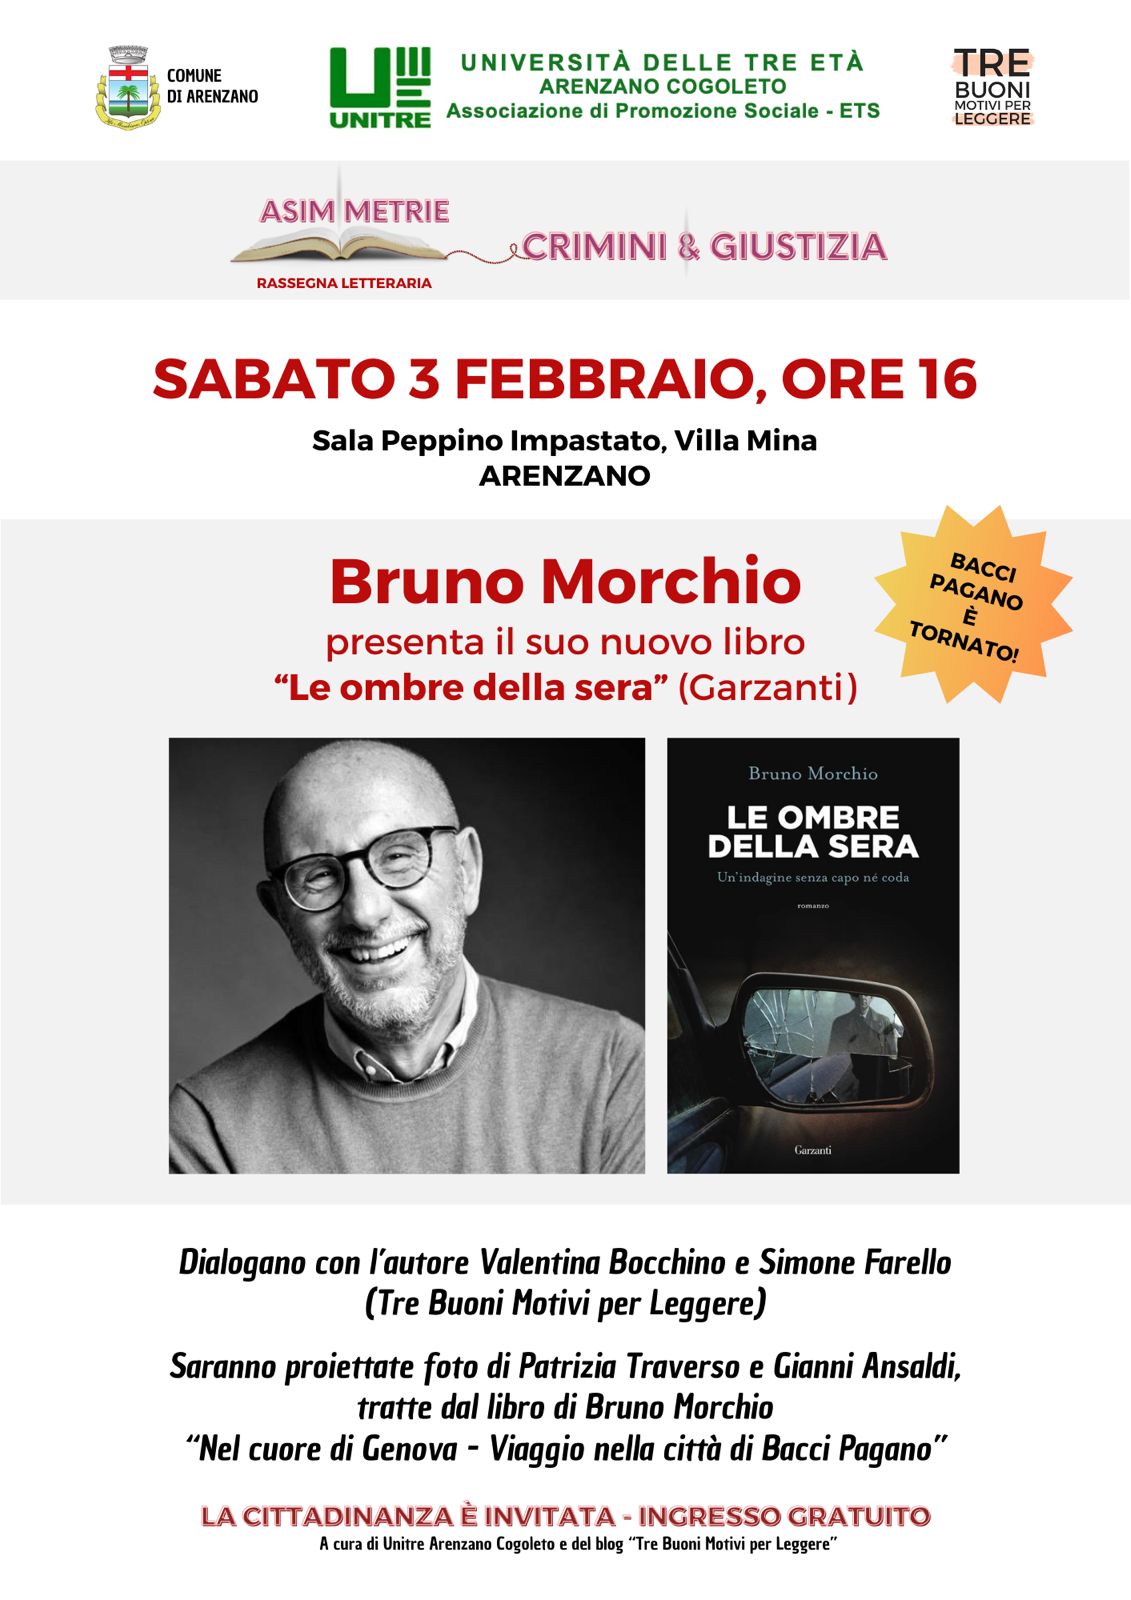 Bruno Morichio presenta Le ombre della sera